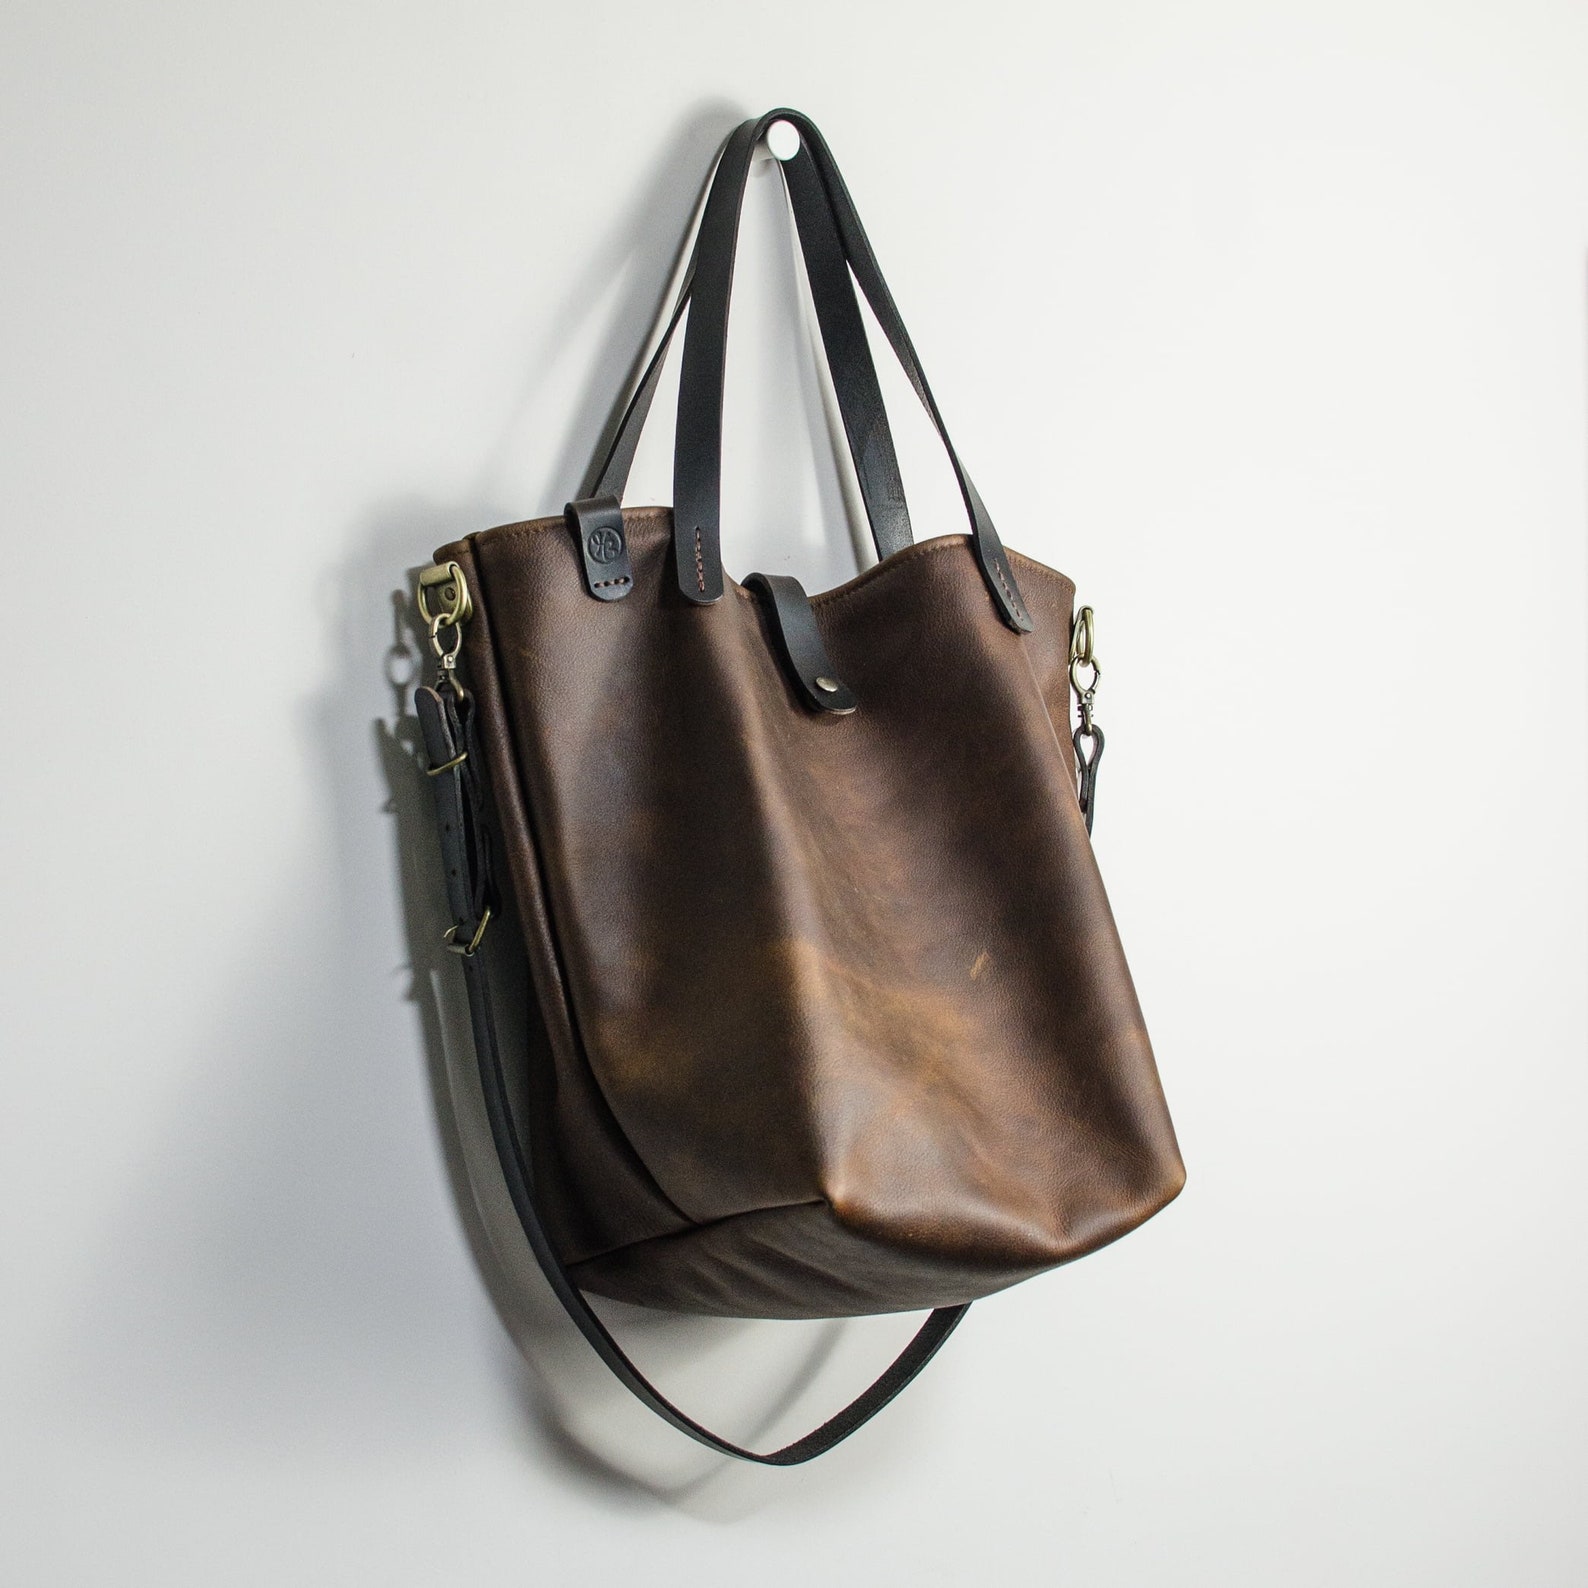 Kodiak Leather Large Tote Bag With Crossbody Adjustable | Etsy